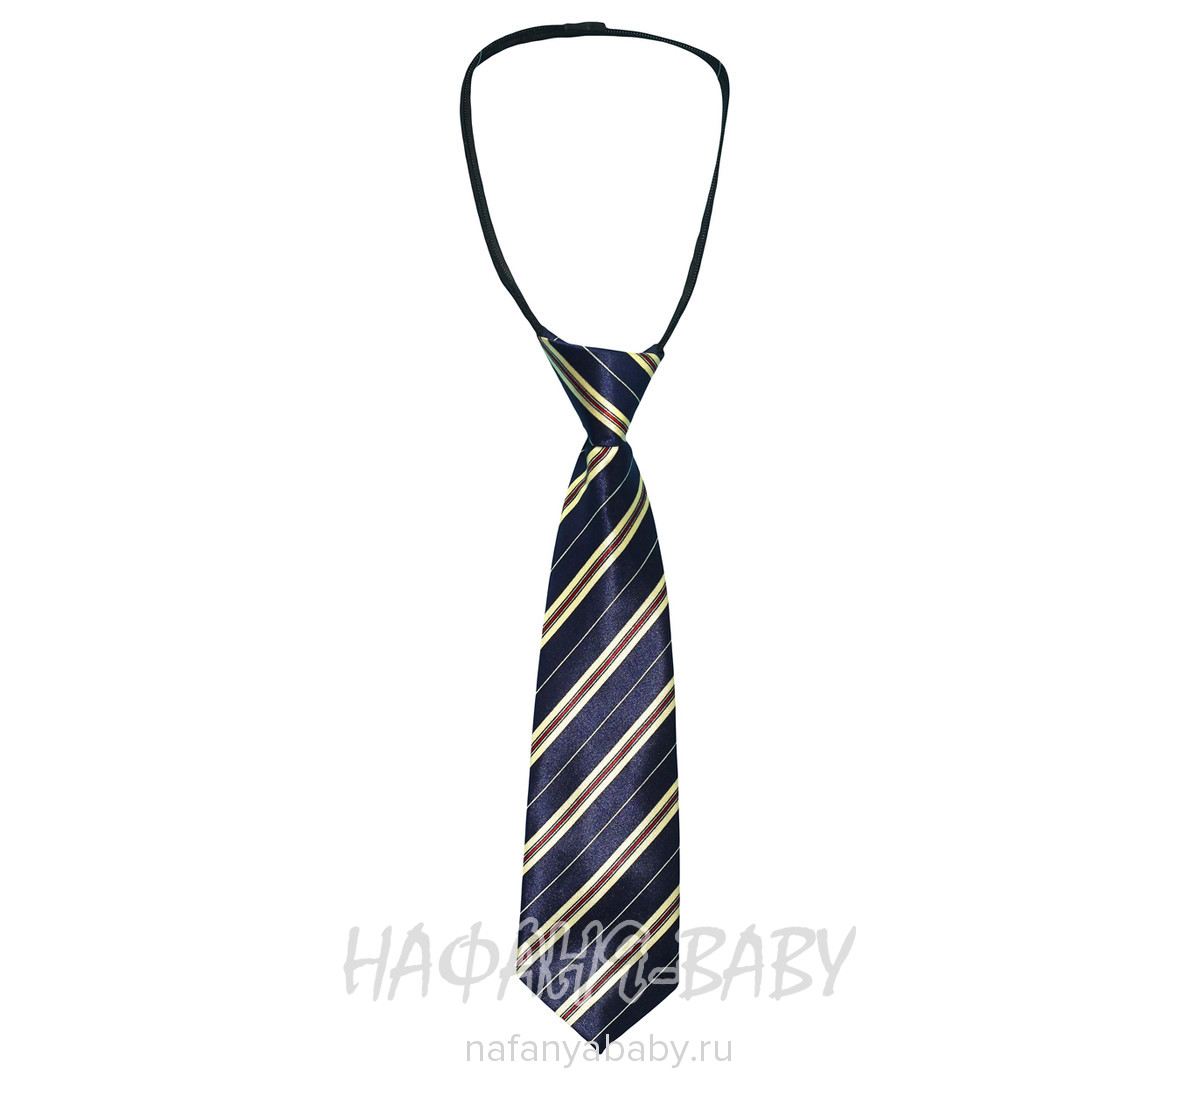 Детский галстук C.R., купить в интернет магазине Нафаня. арт: 4038.